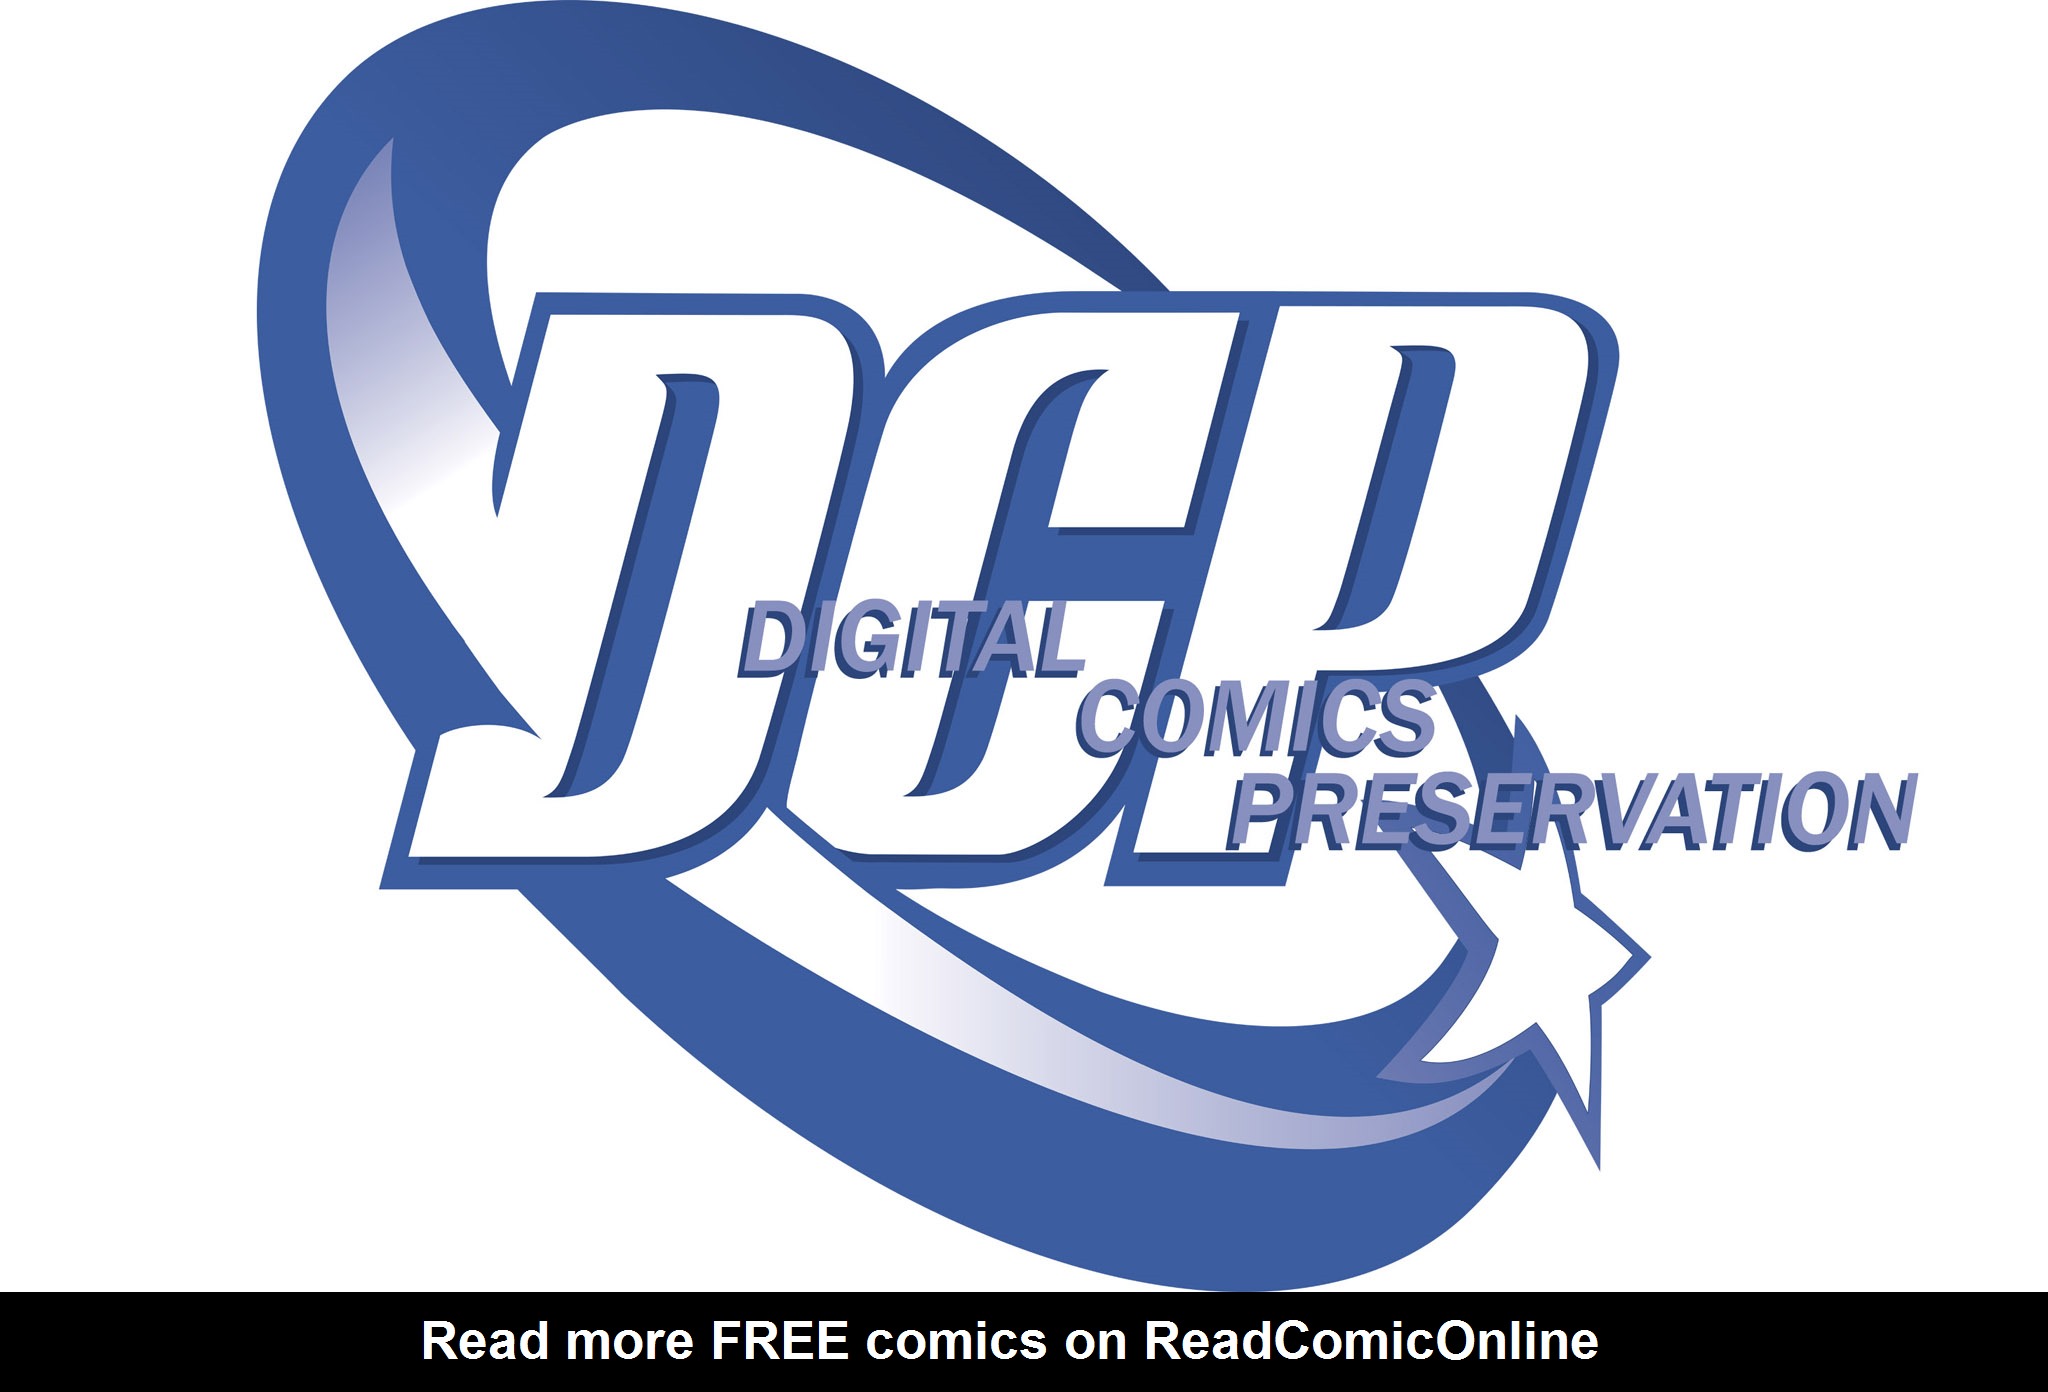 Read online Nancy Drew comic -  Issue #15 - 99